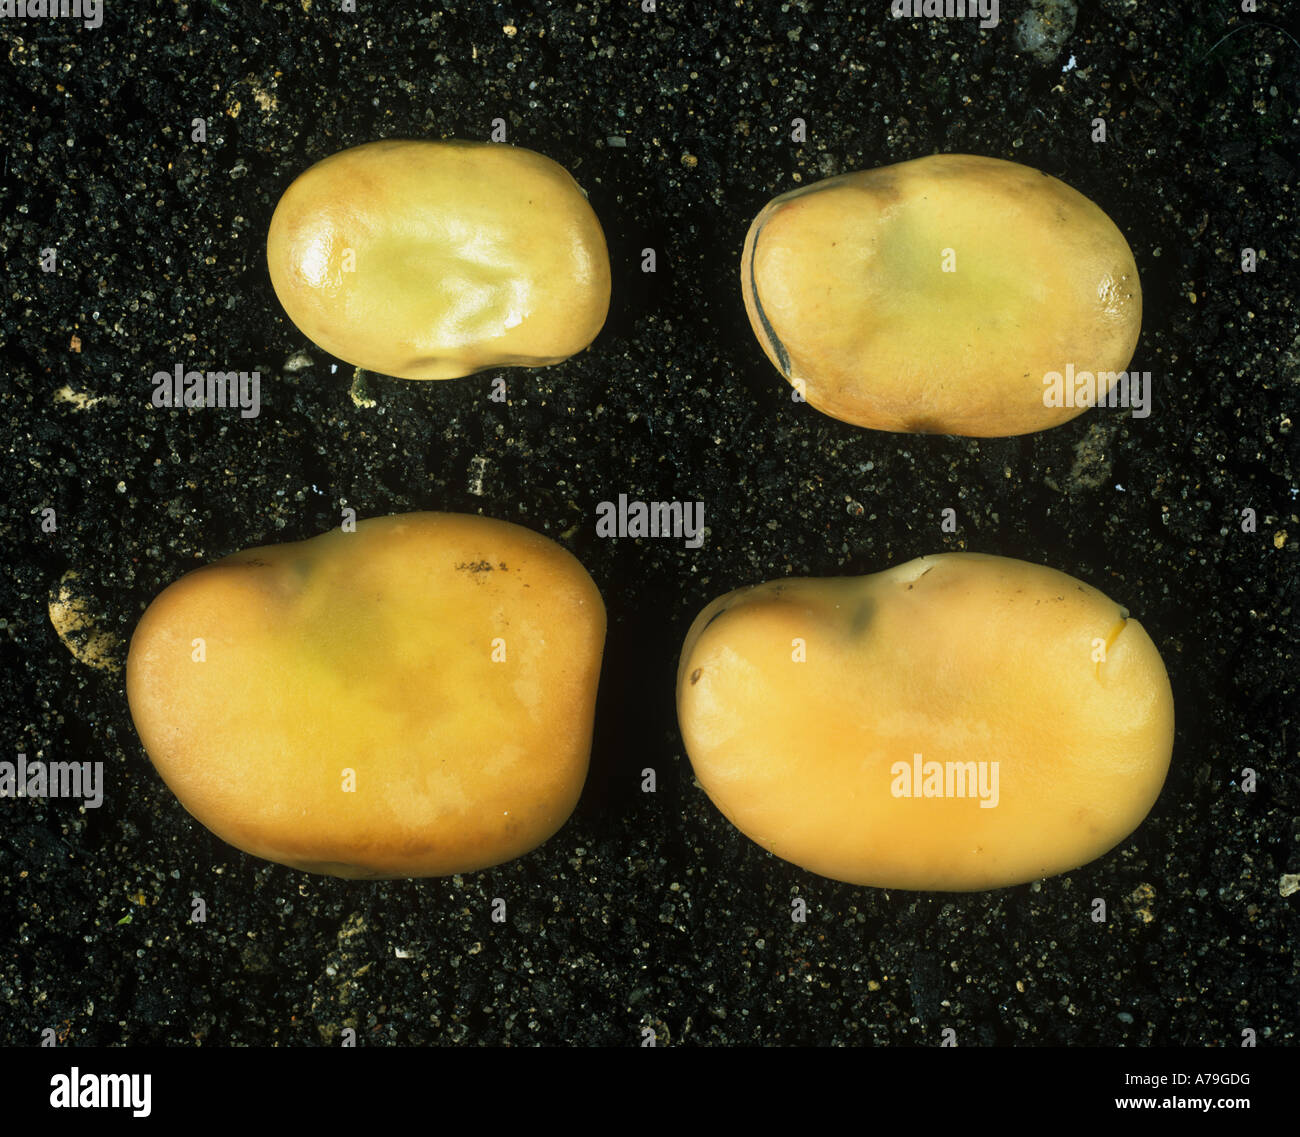 Saubohne Samen geschwollen nach Samen trocknen verglichen wird über Nacht in Wasser eingeweicht Stockfoto